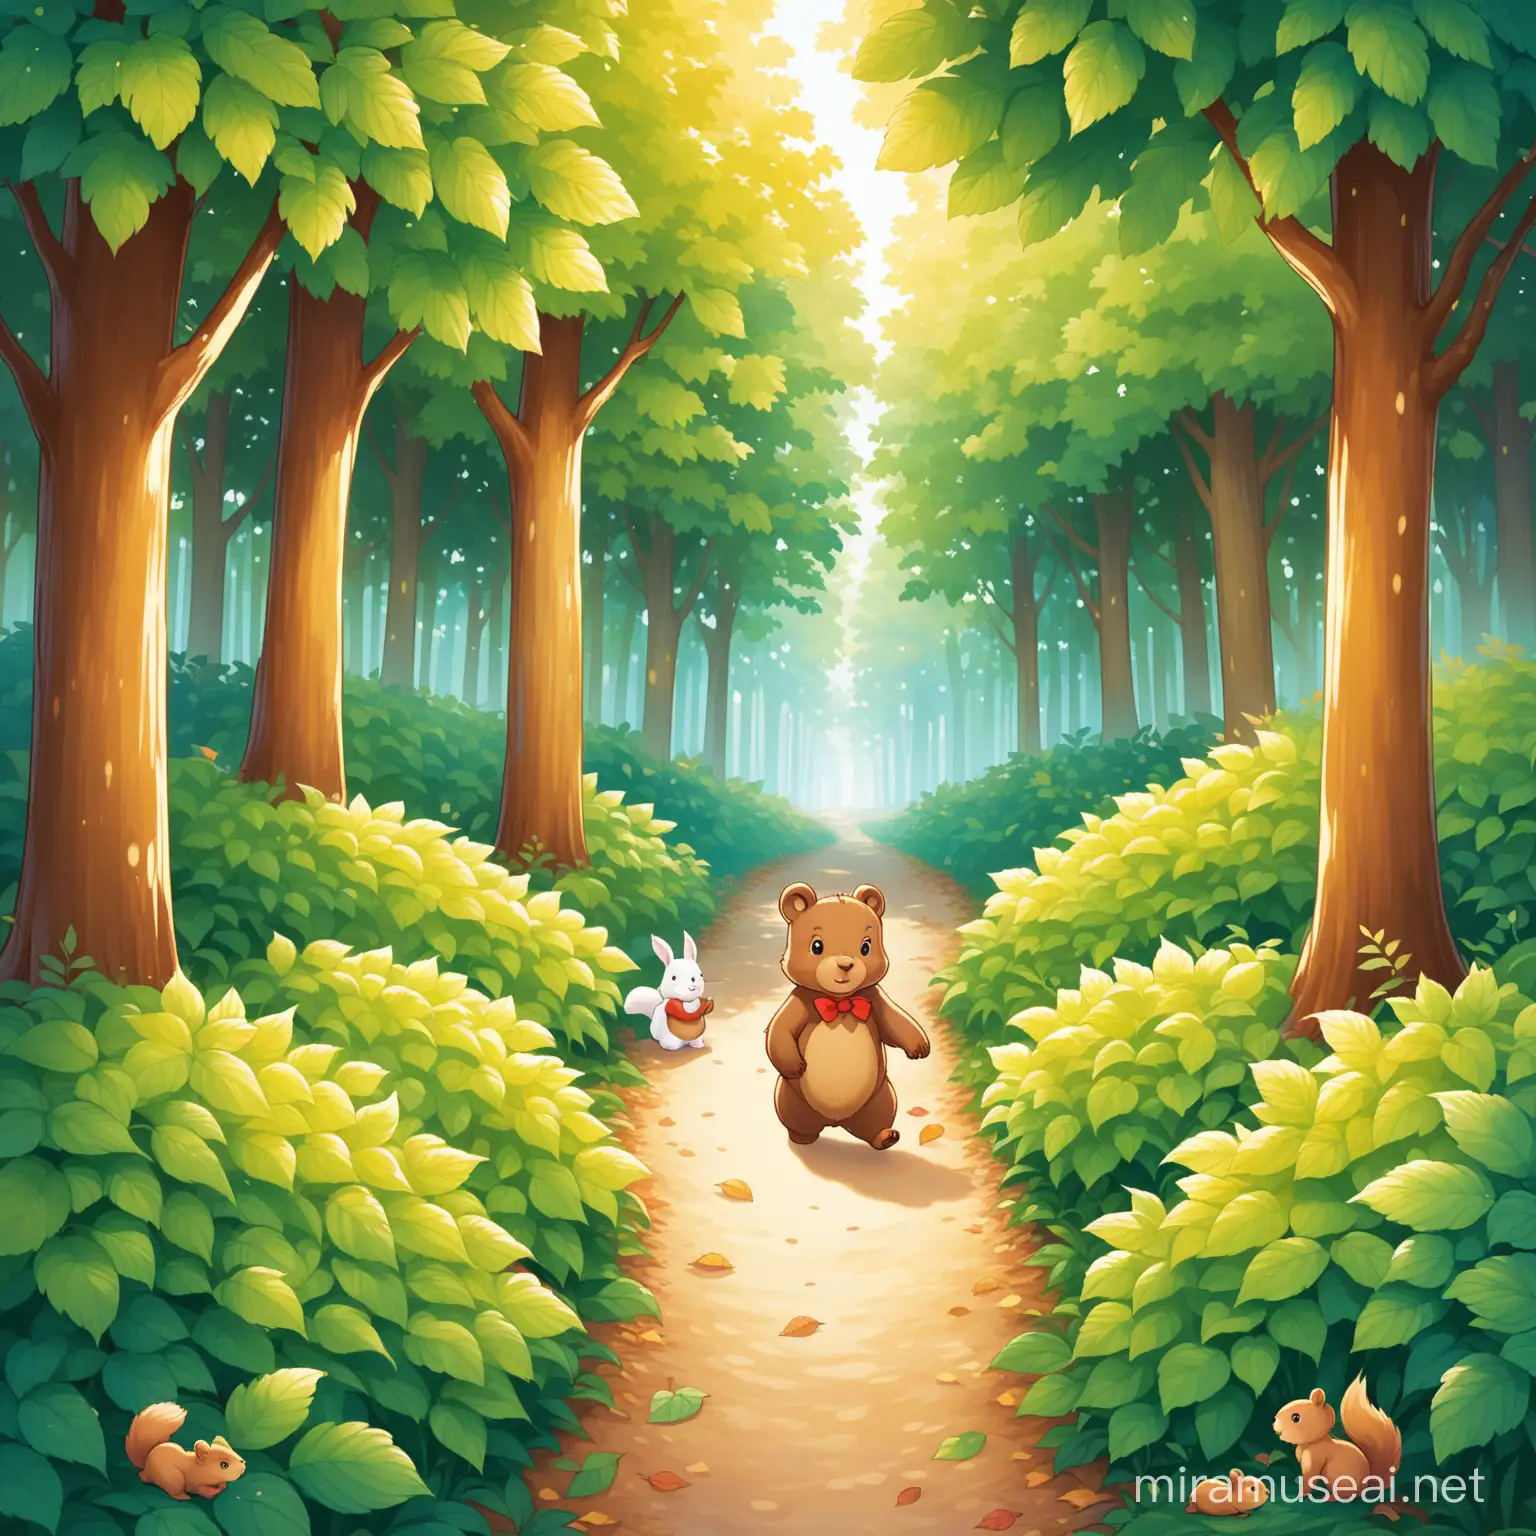 5. 小熊,小松鼠,小兔子继续前行，遇到了一片茂密的树林，小兔子发现了一条隐藏在树叶下的小路，他们顺着小路继续前进。